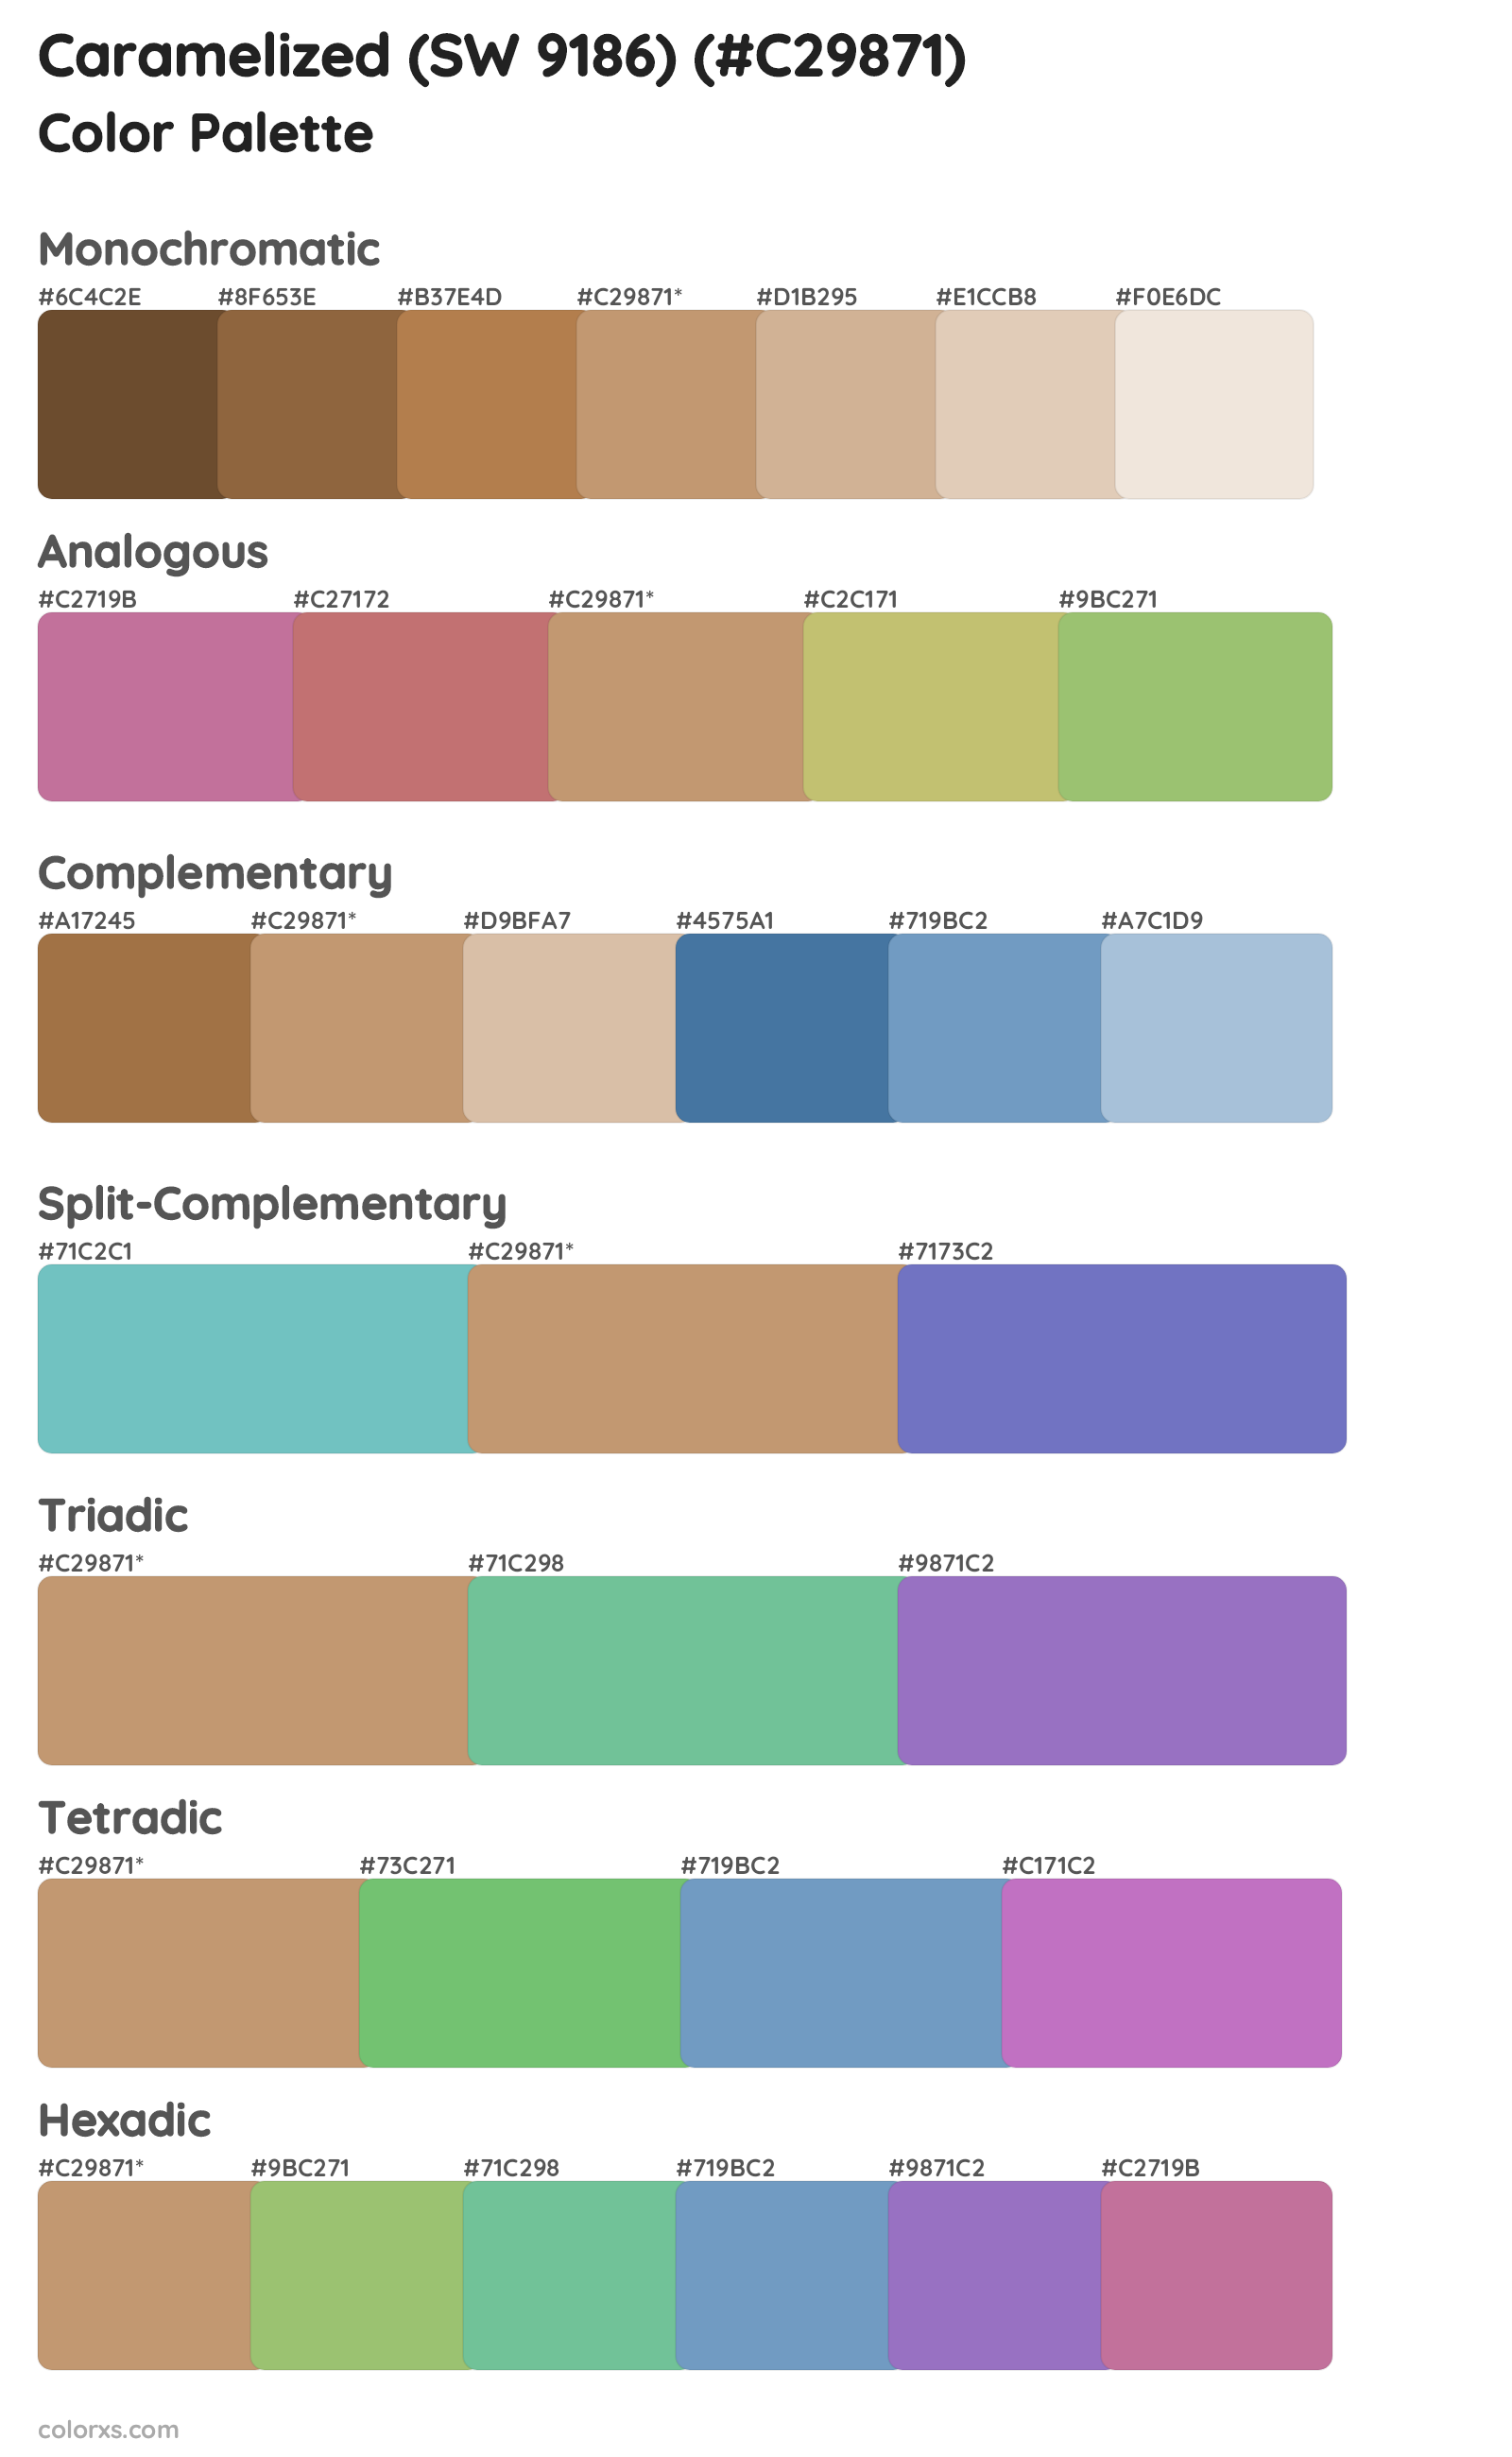 Caramelized (SW 9186) Color Scheme Palettes